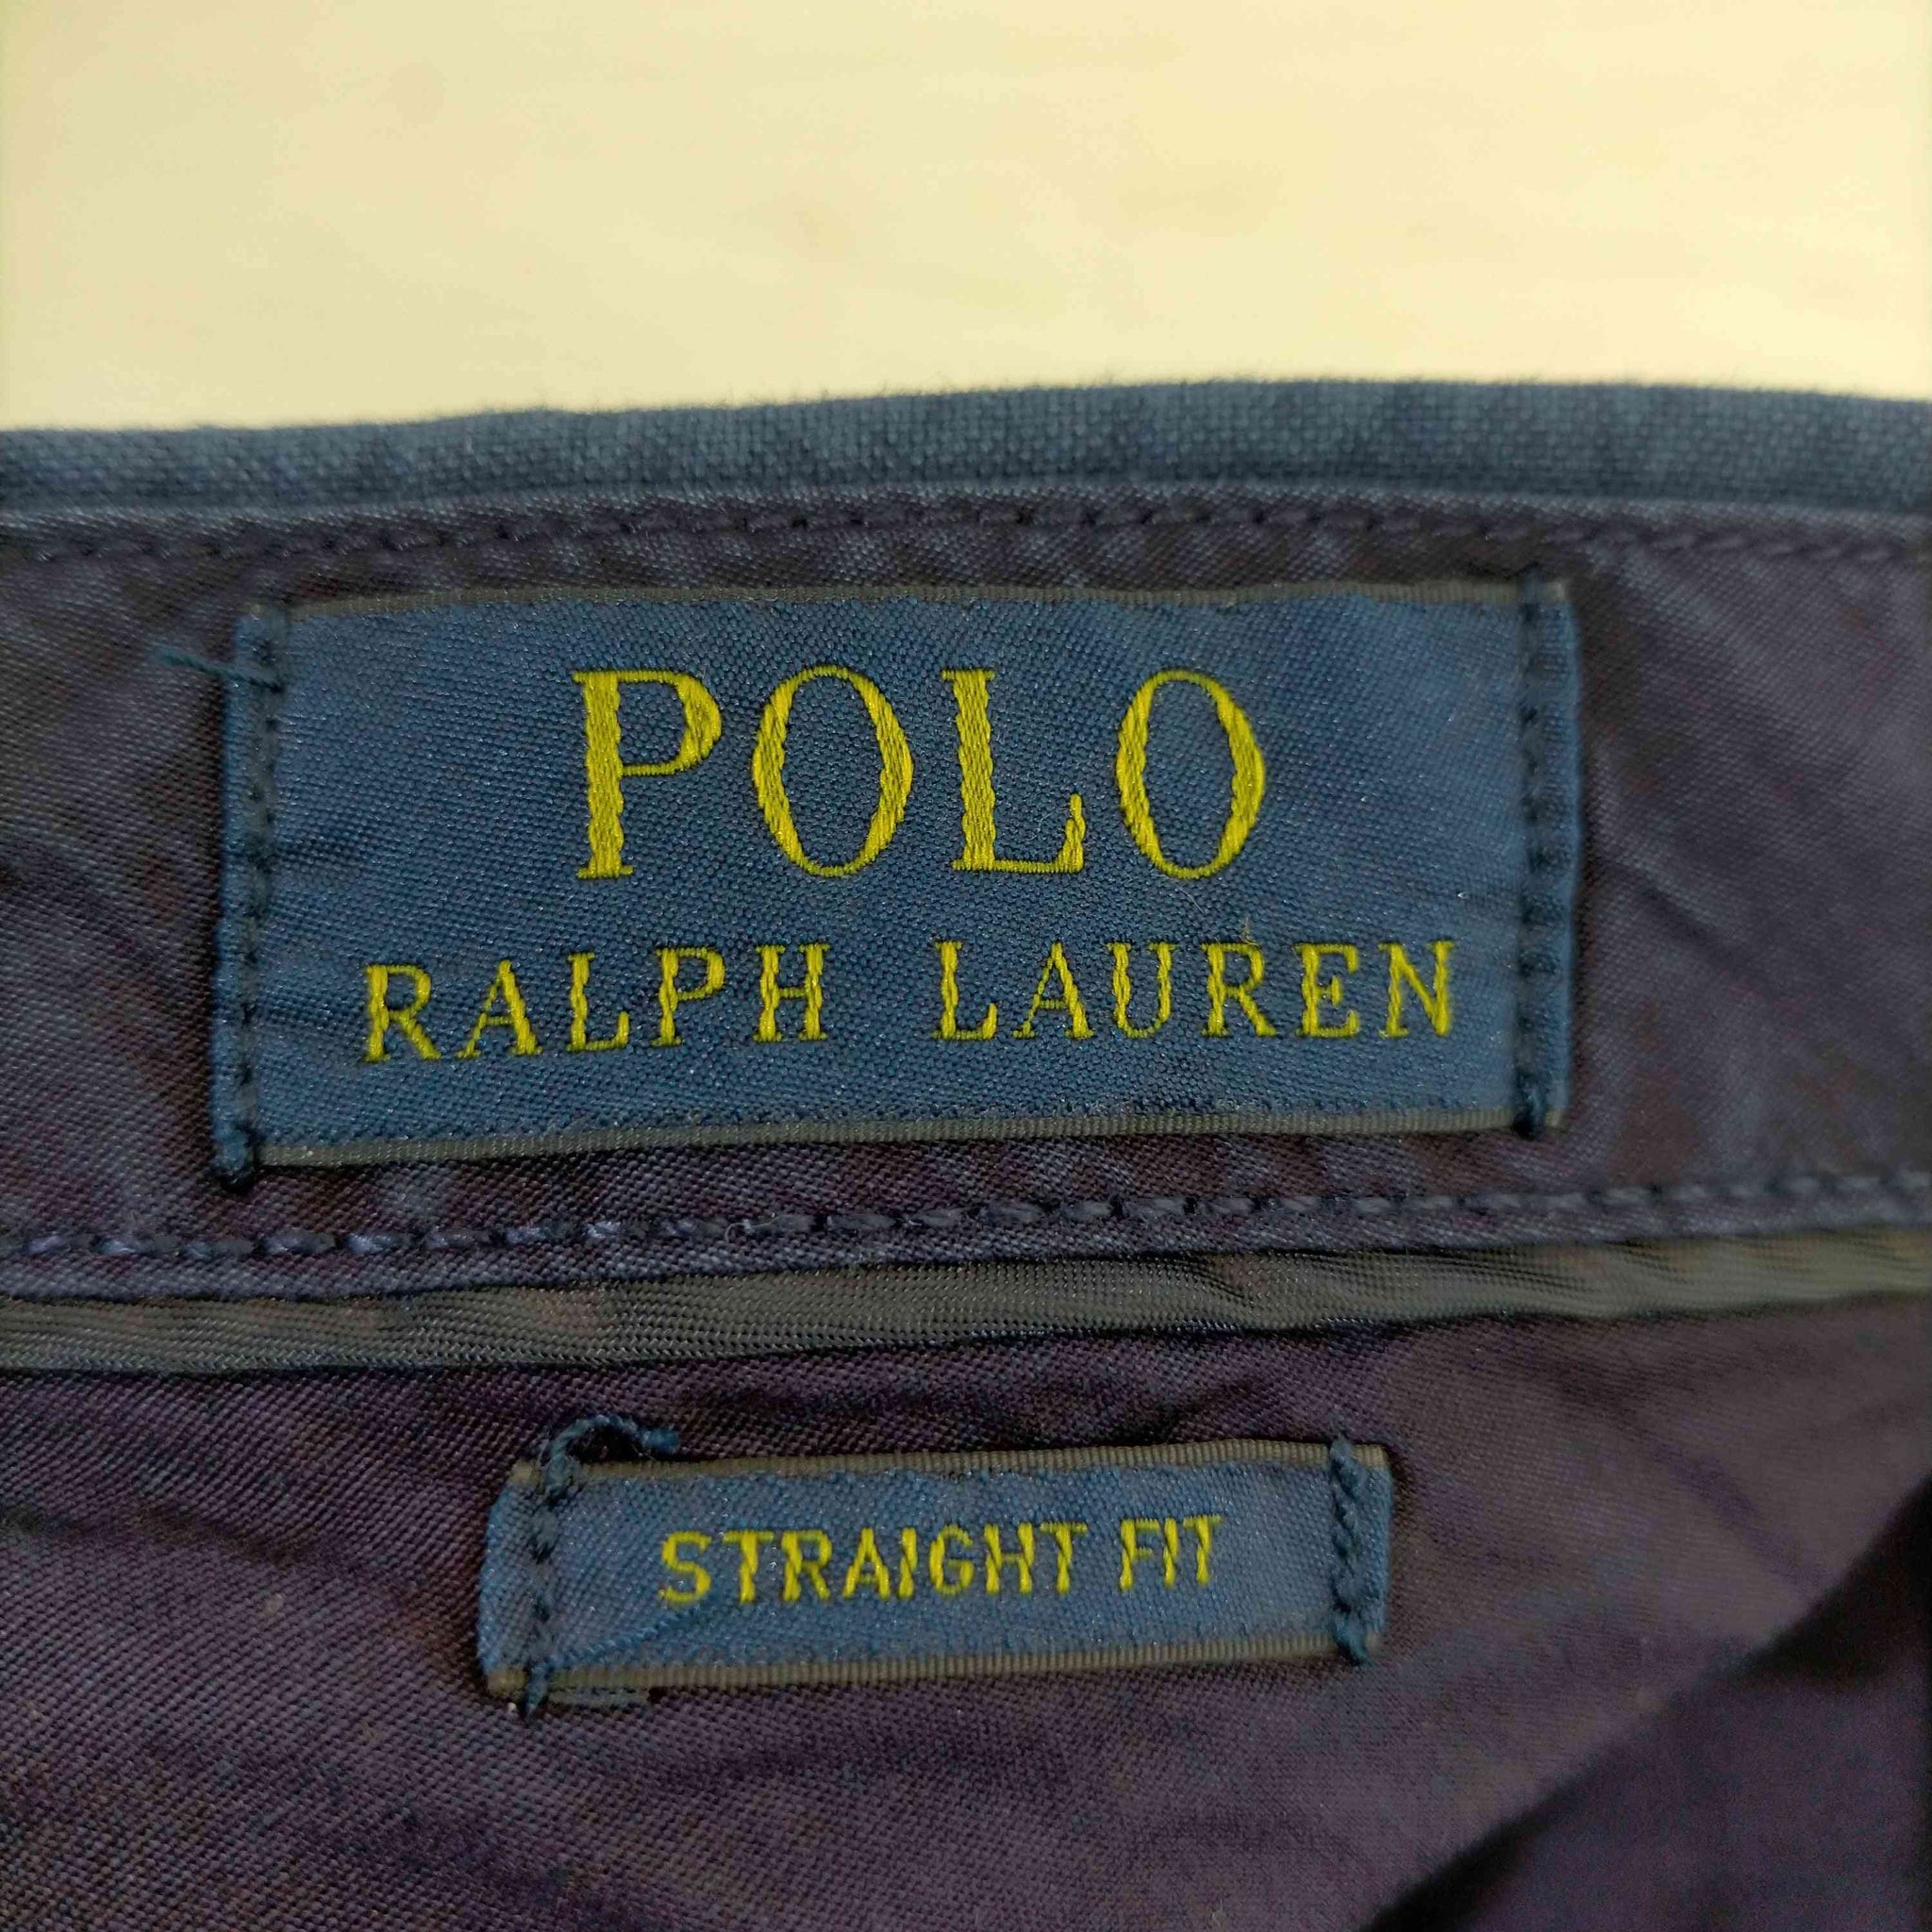 POLO RALPH LAUREN(ポロラルフローレン)STRAIGHT FIT コットンストレートパンツ